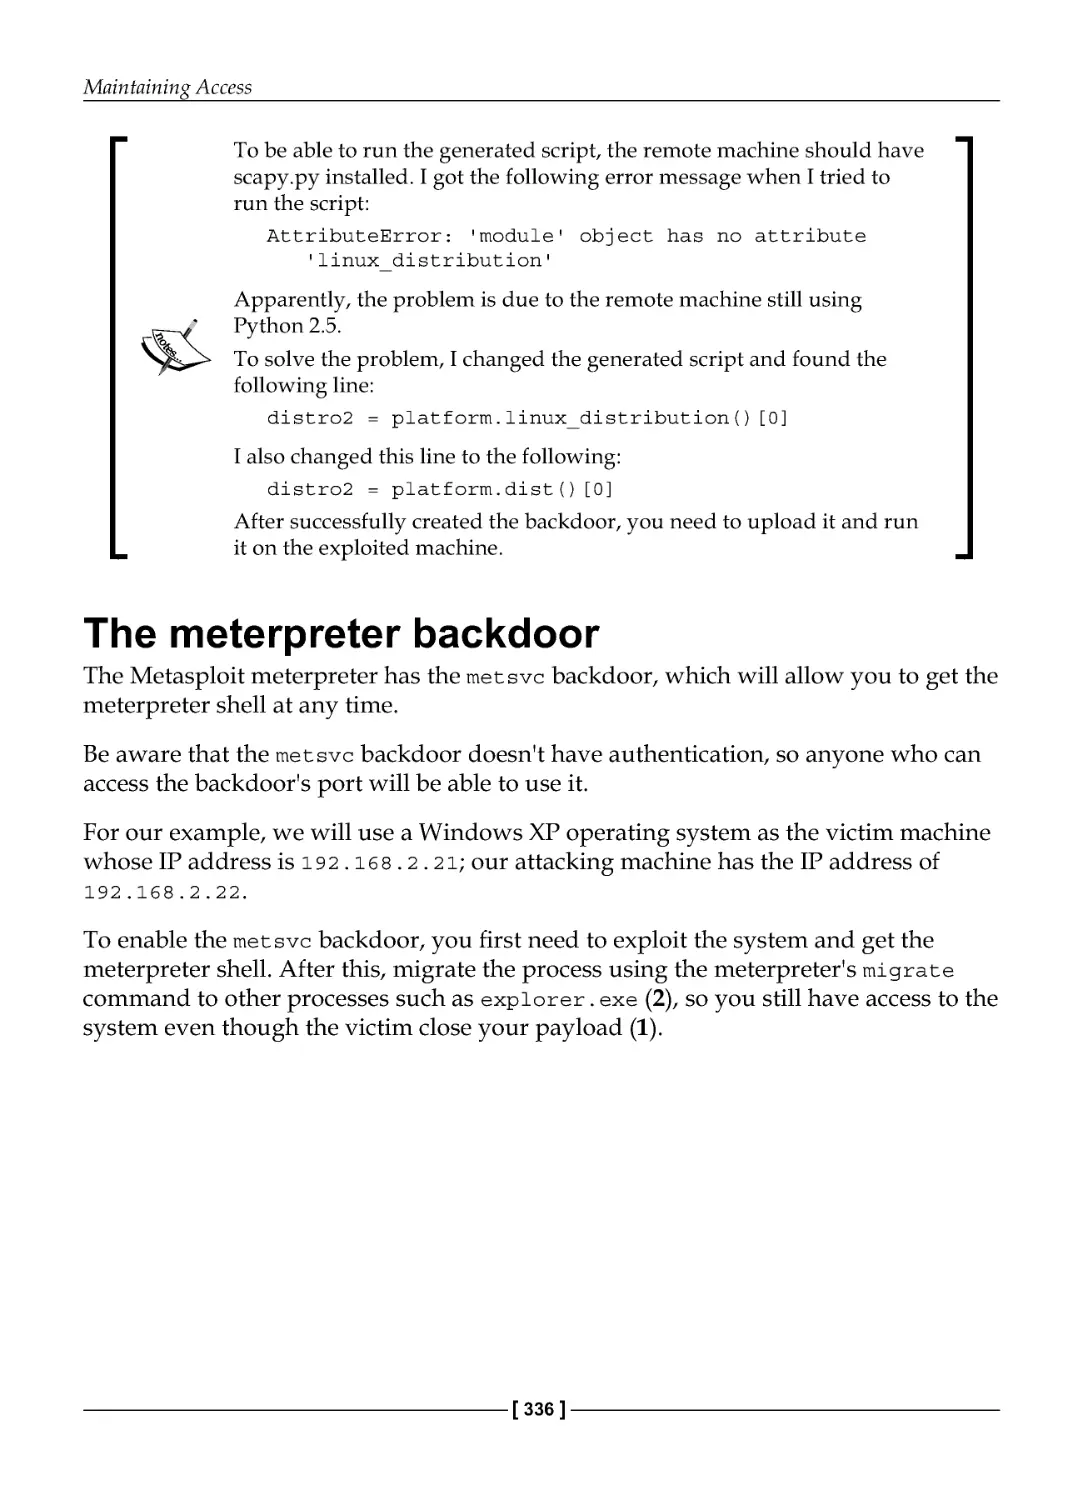 The Meterpreter backdoor